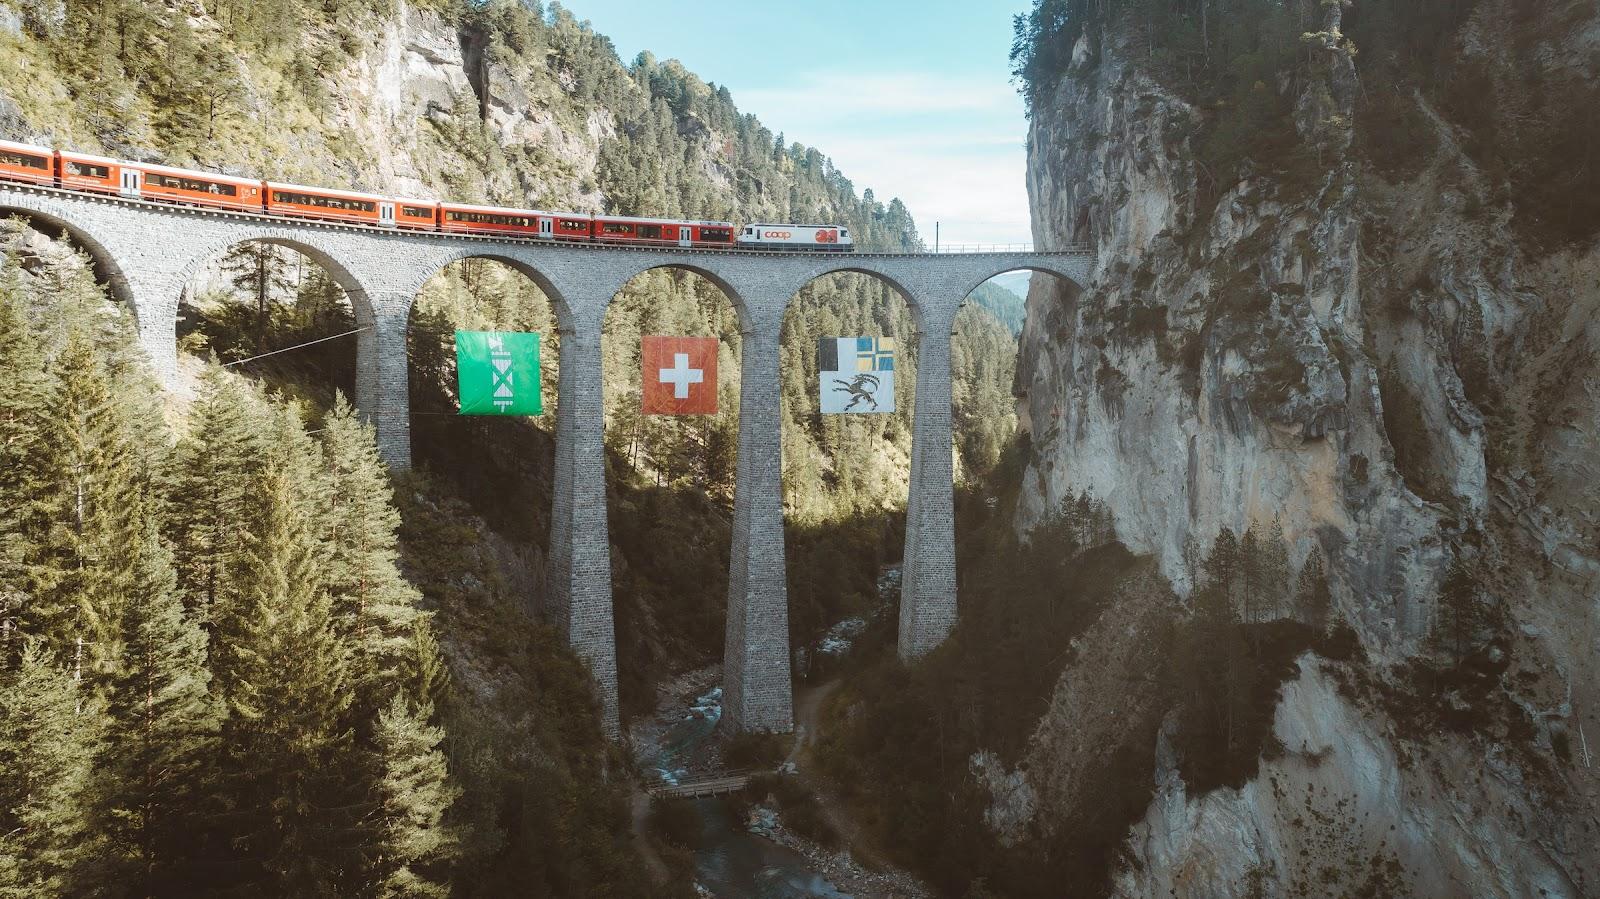 A train crosses a bridge in the swill alps.